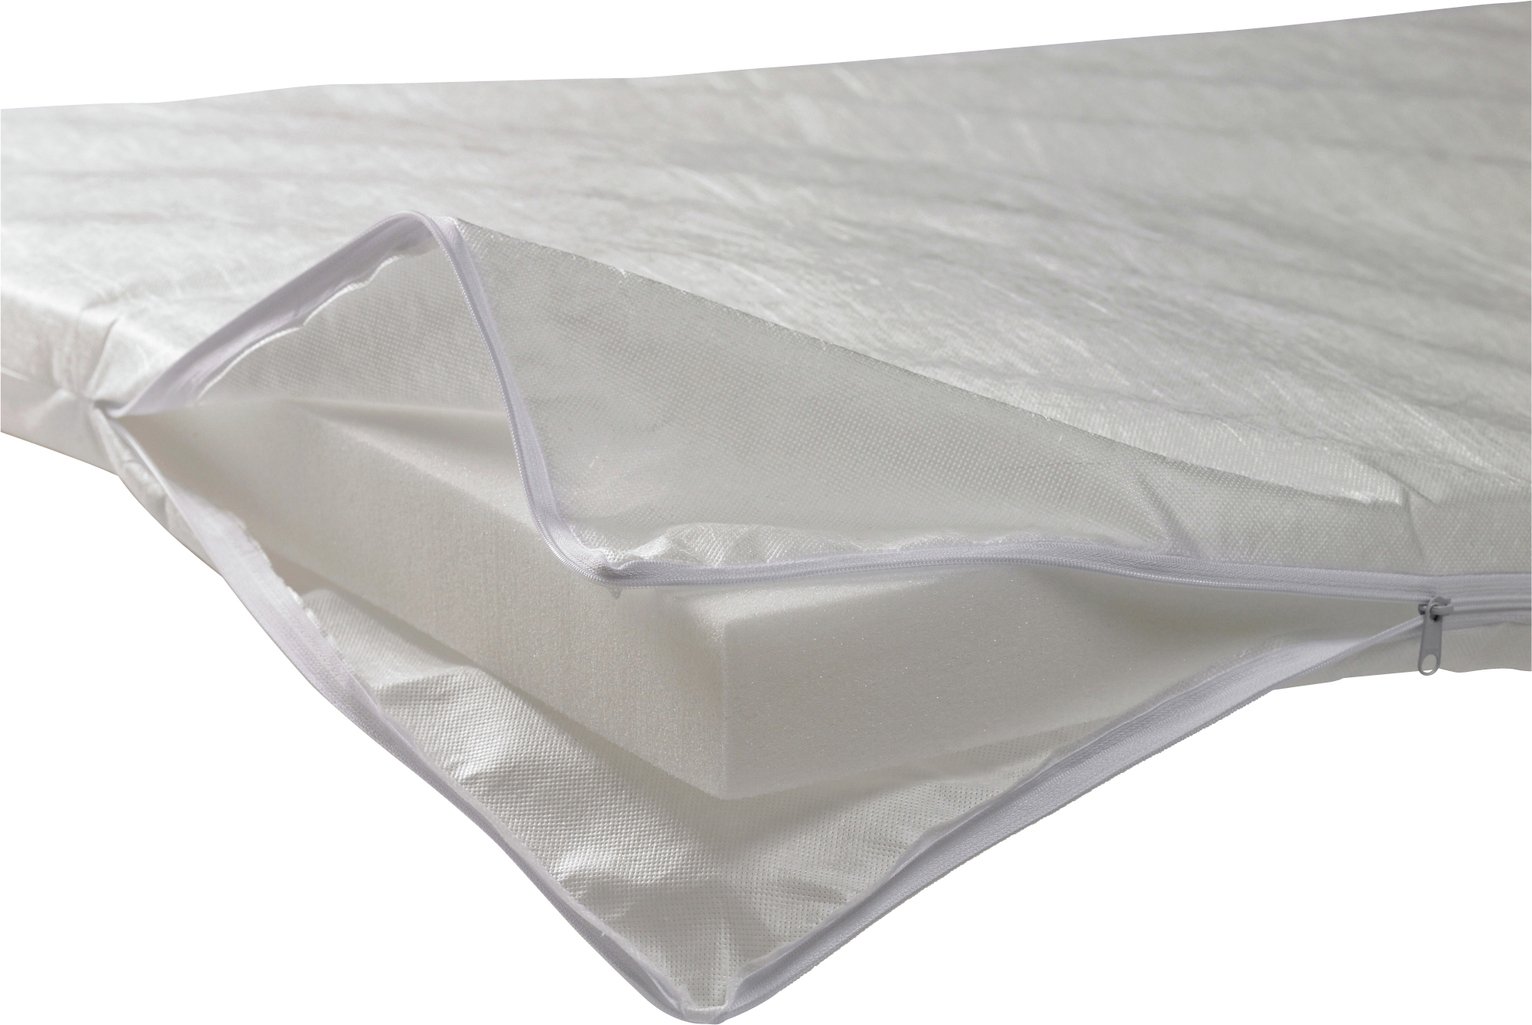 cuggl foam cot mattress